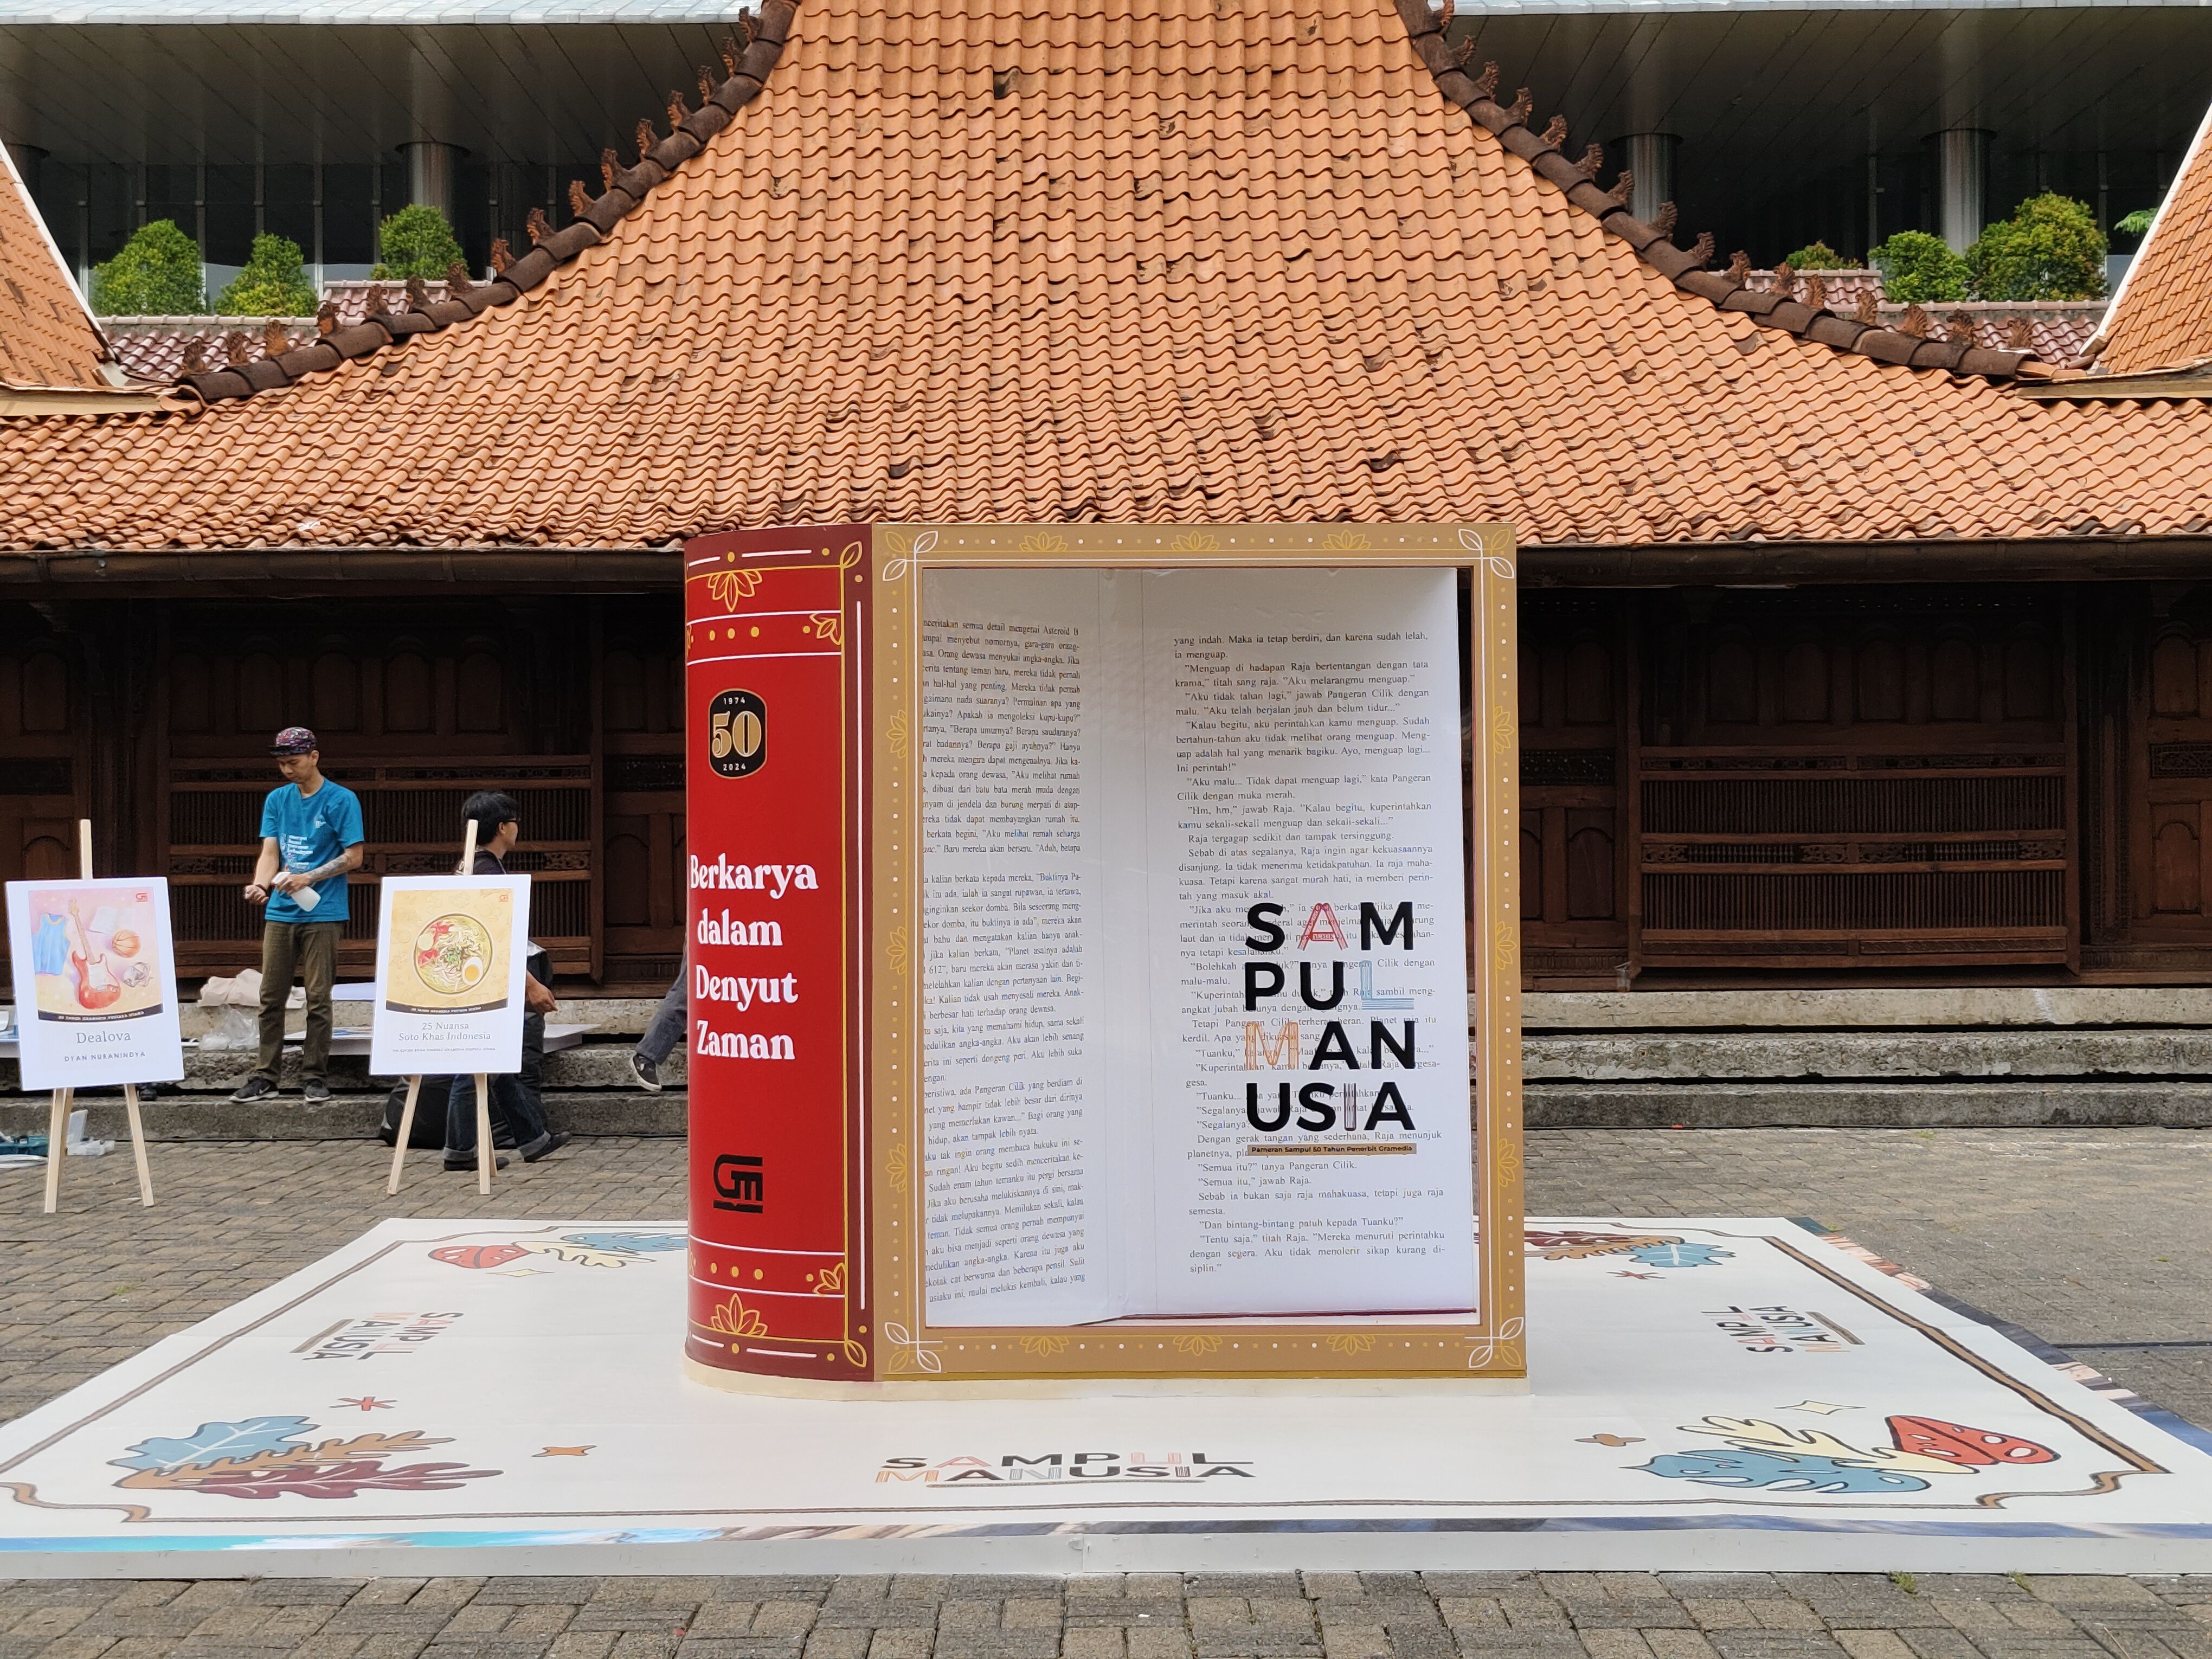 Cara Berkunjung ke Pameran Sampul Manusia di Jakarta, Masuknya Gratis